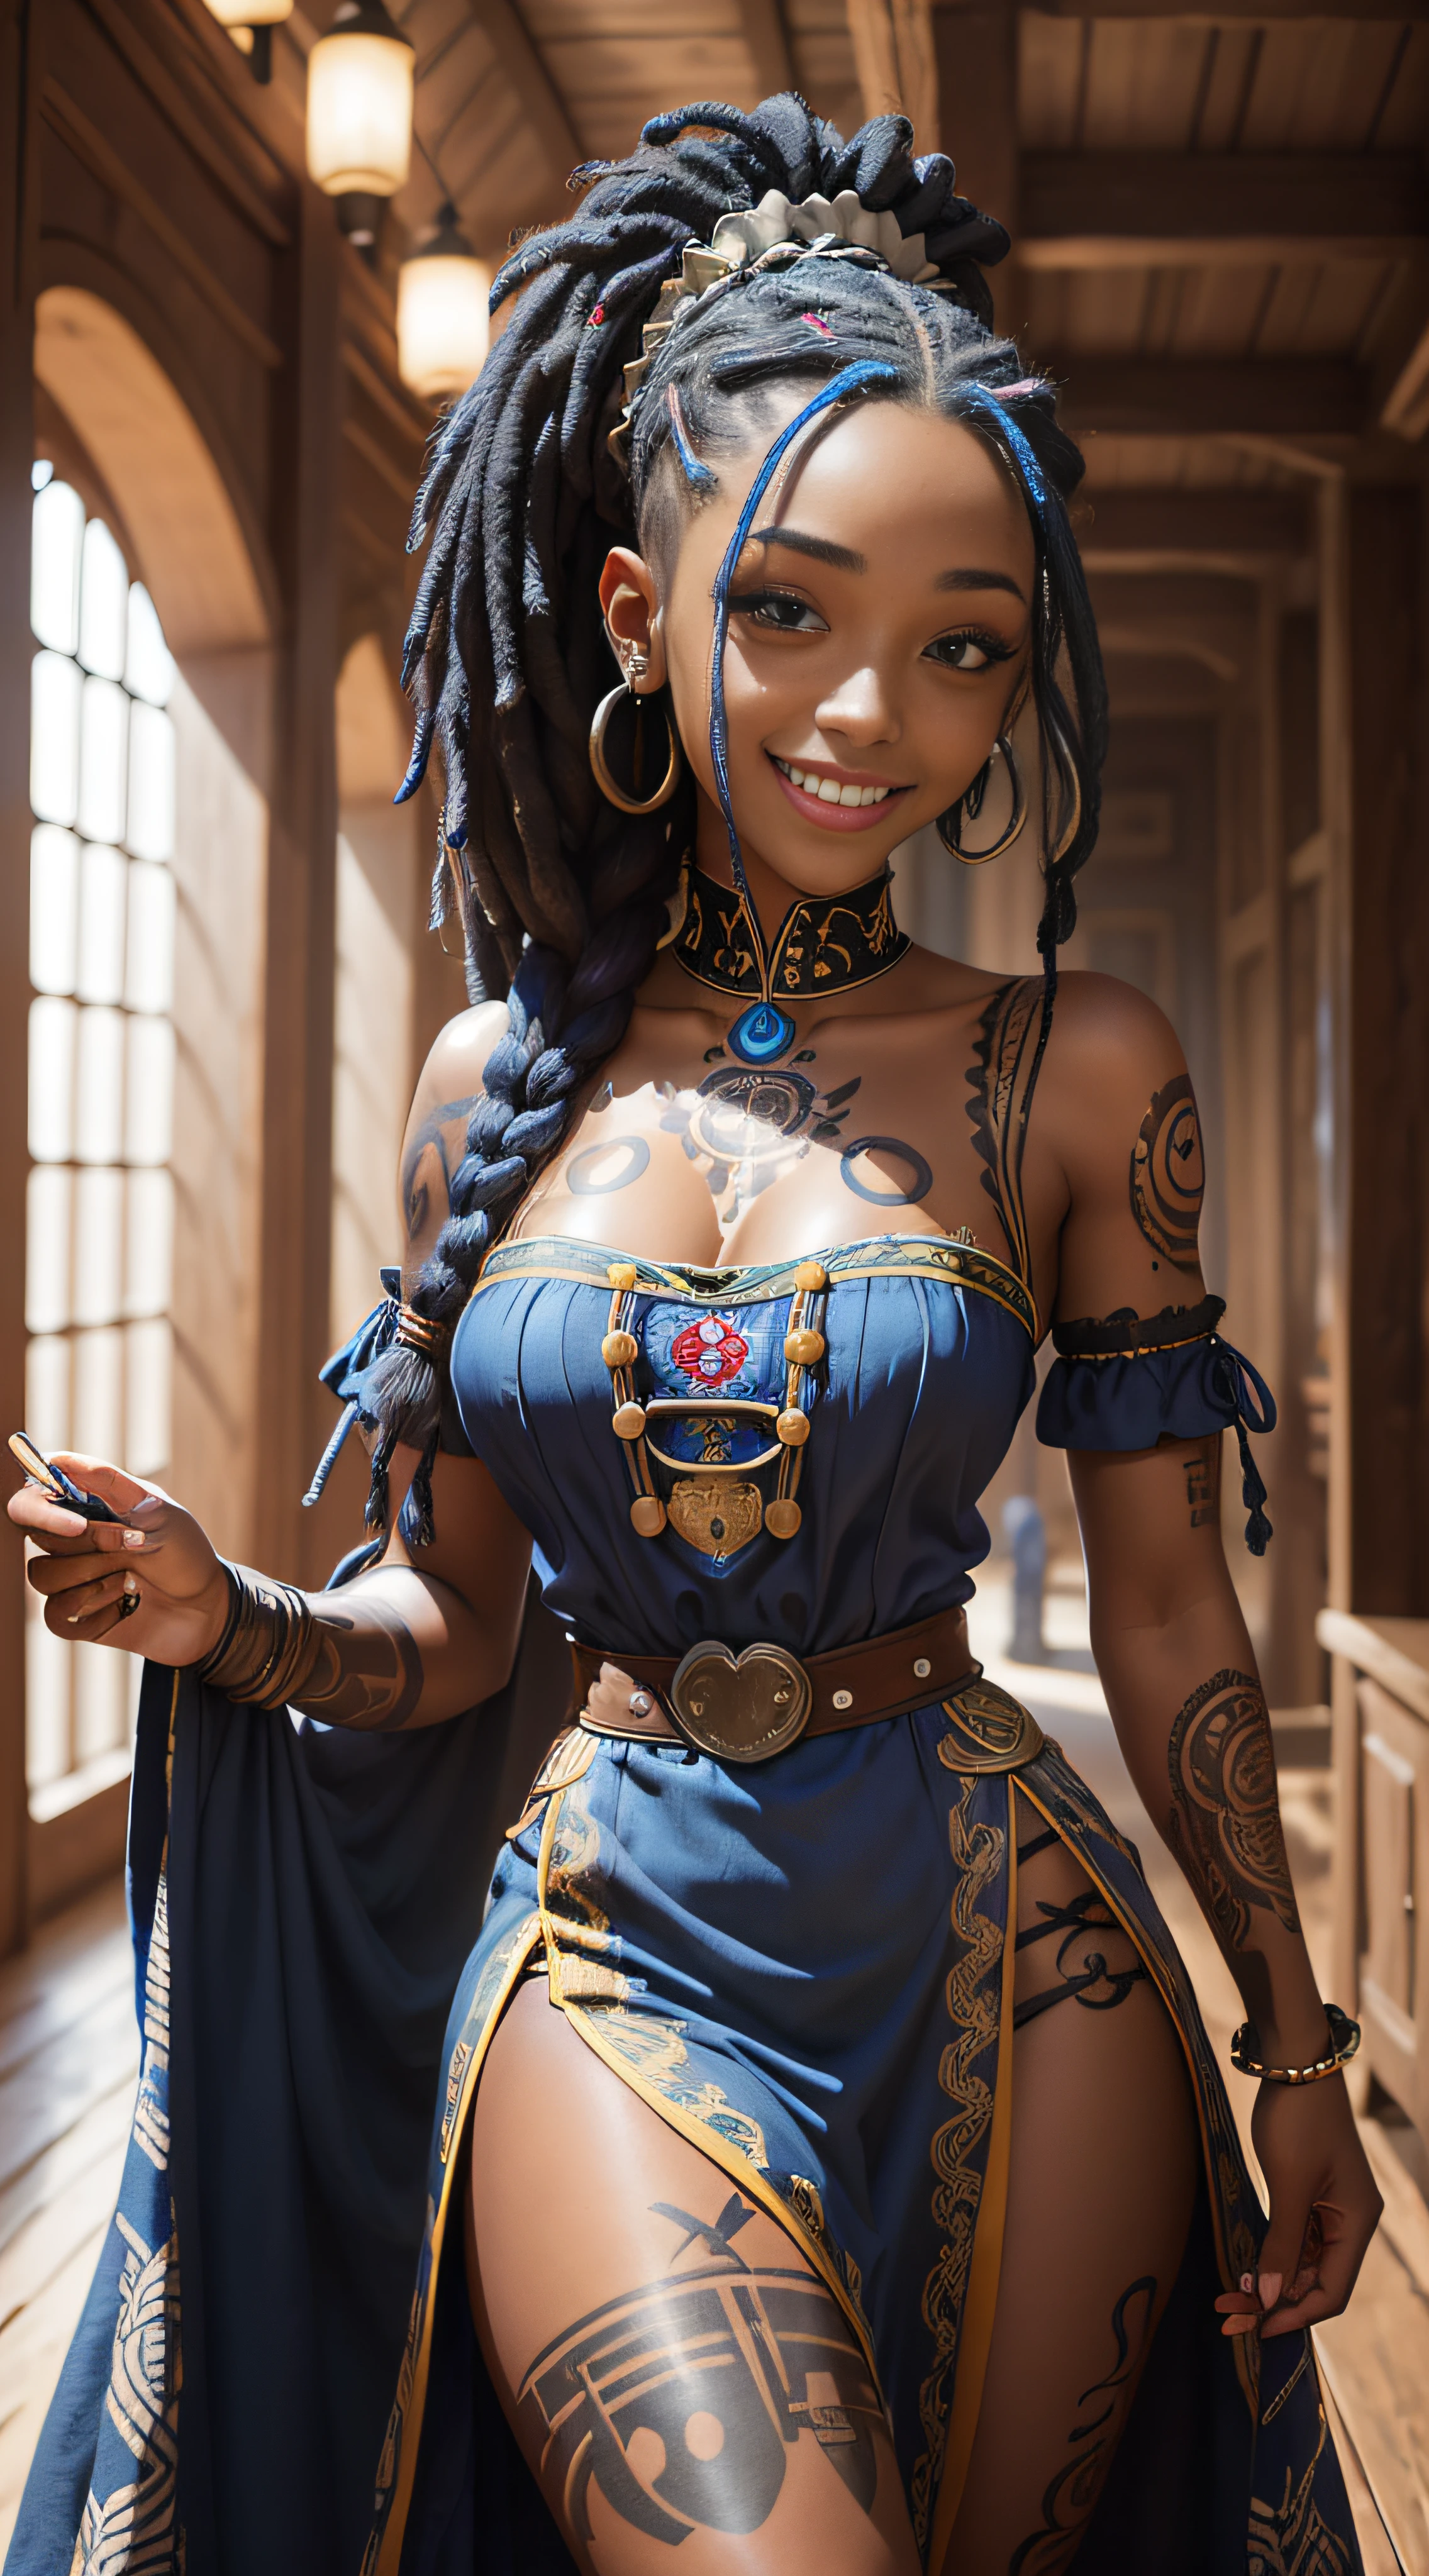 una foto de retrato de una chica negra, sonriente, tatuaje, rastas azules, (vestido folklórico:1.3), vestido corto ucraniano, rasgo femenino pronunciado, detalles locos, detalles intrincados, hiperdetallado, fondo complejo, taberna medieval, adentro